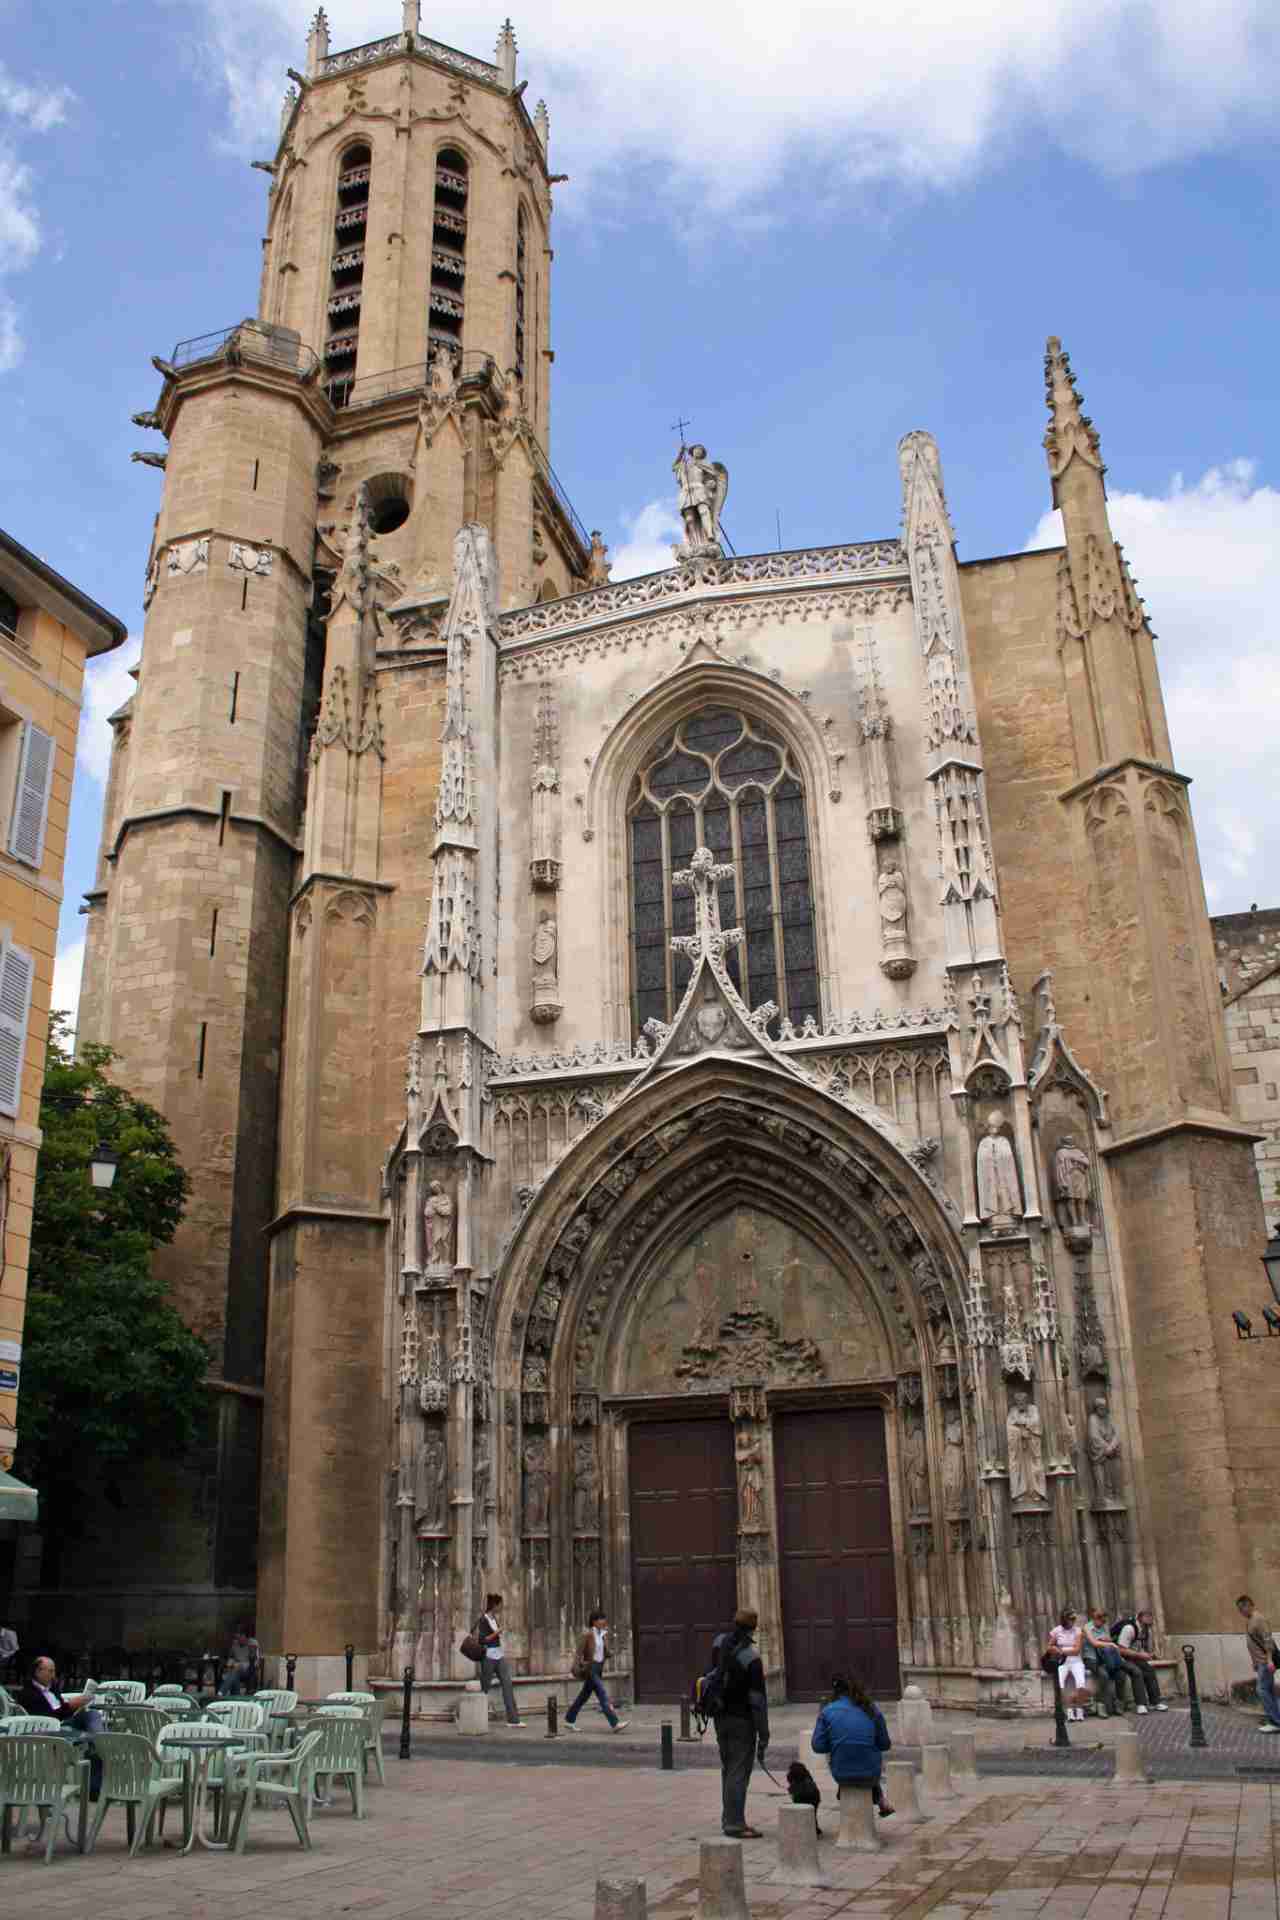 Aix Cathedral, Aix-en-Provence, France